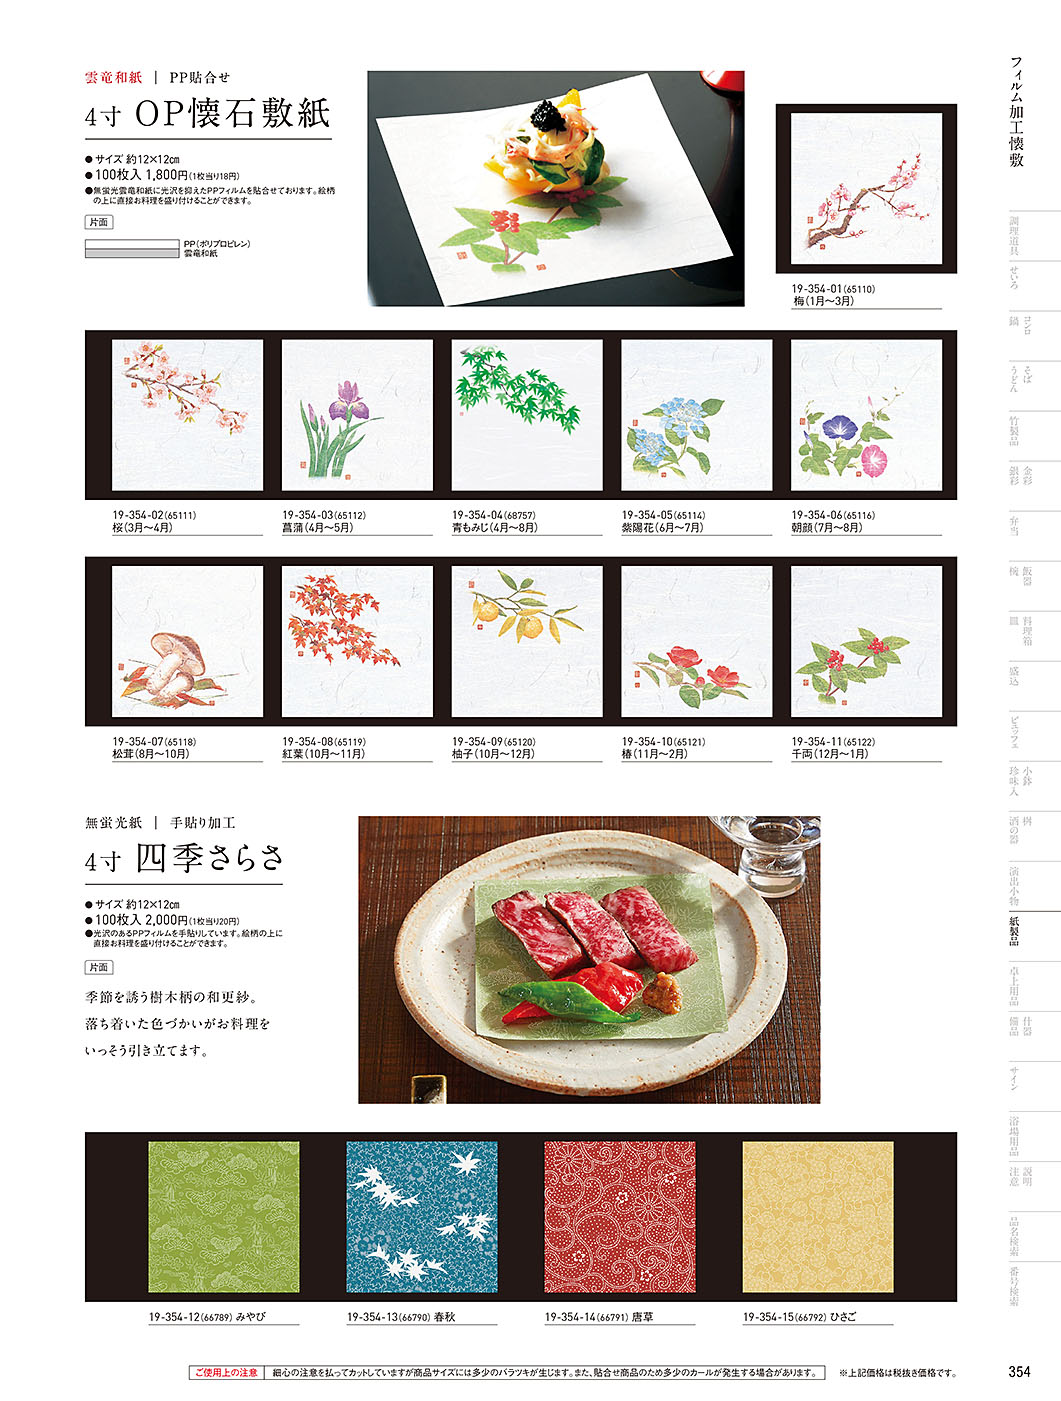 和食器カタログ P.354-紙製品／フィルム加工敷紙